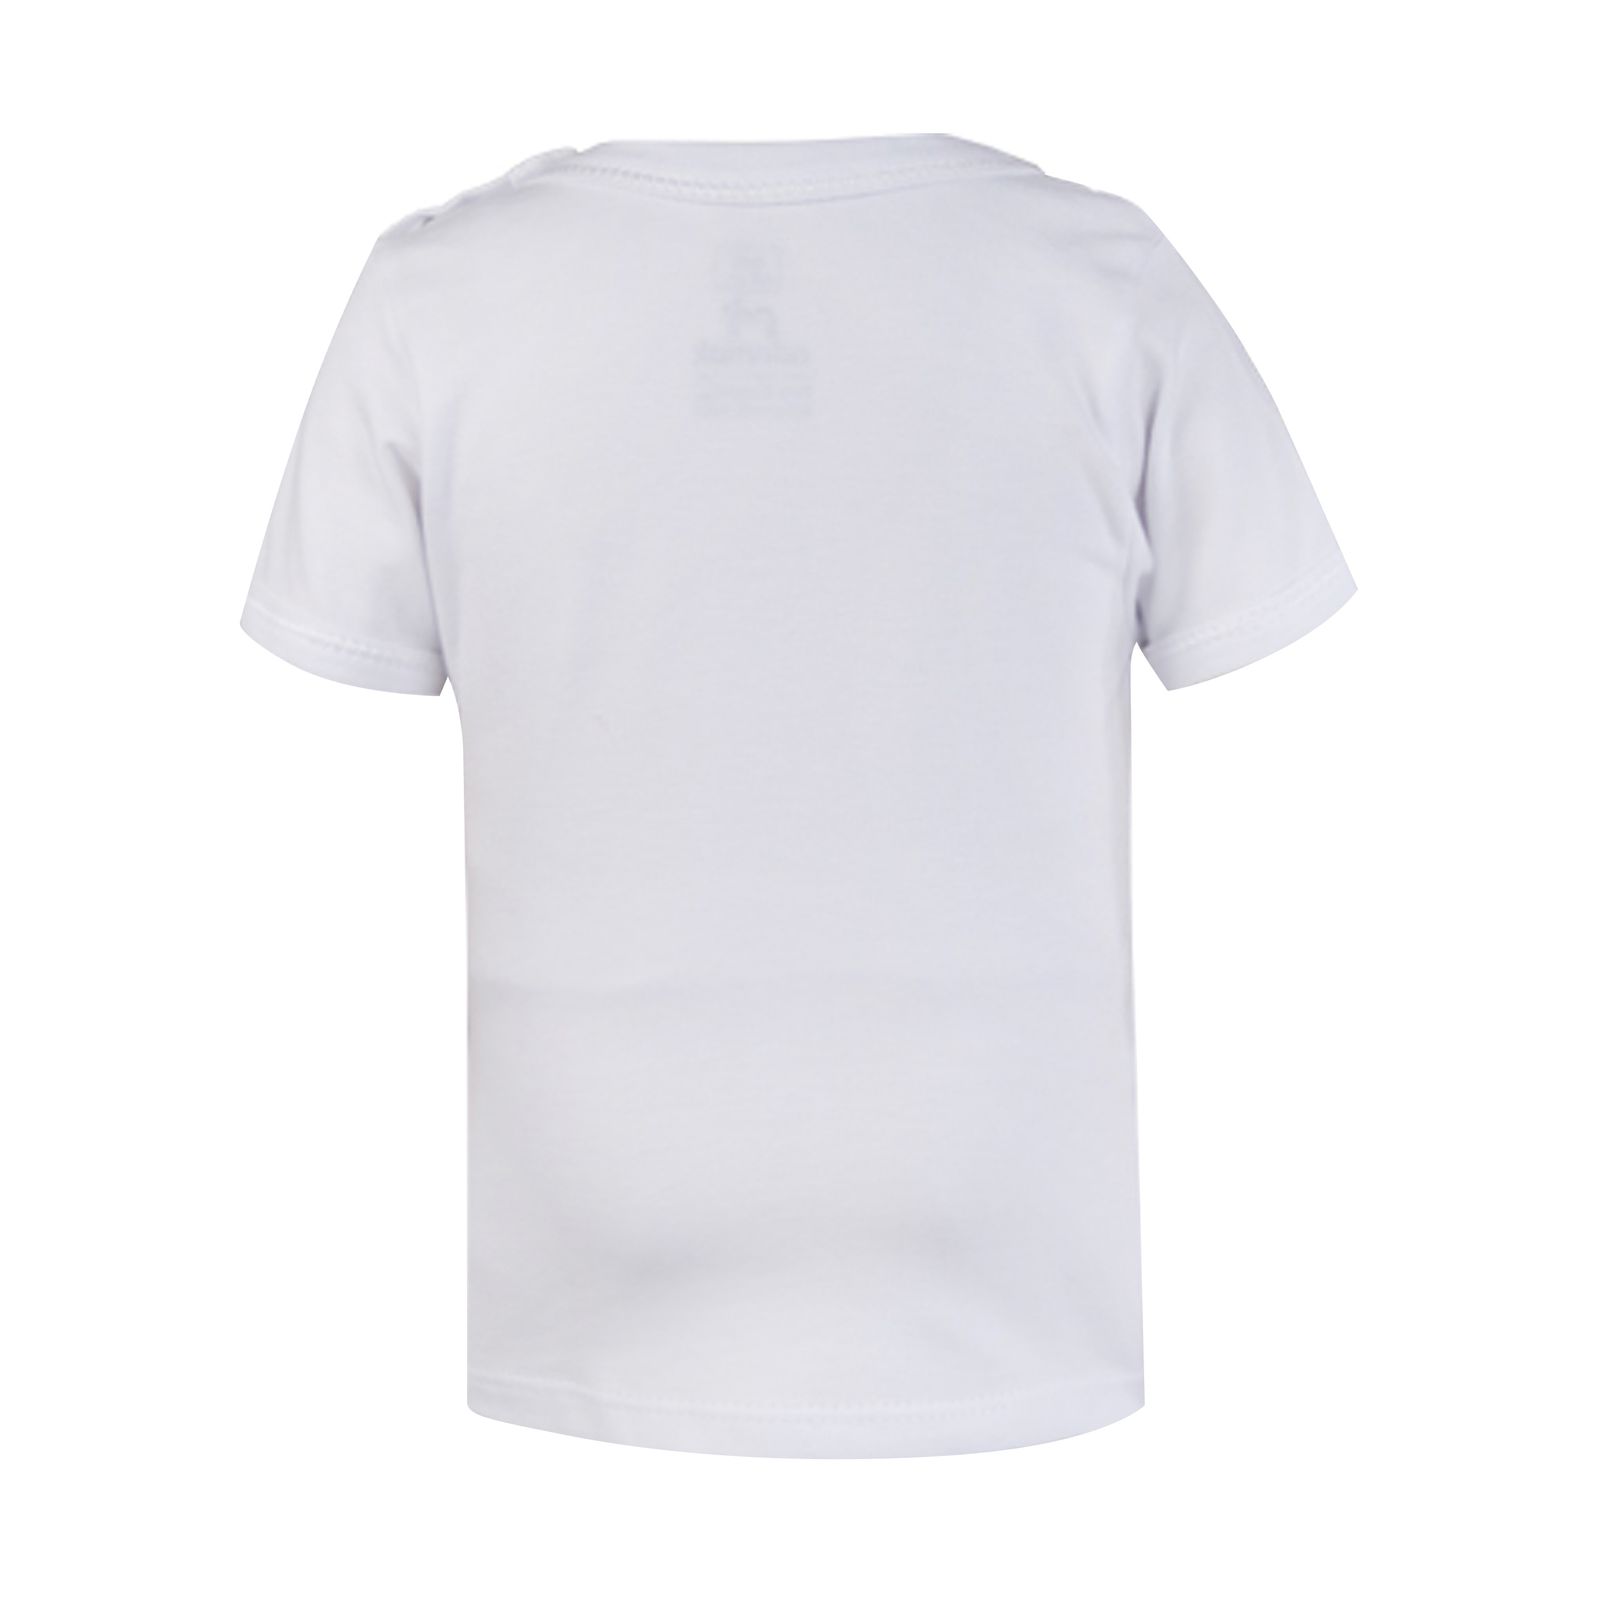 تی شرت آستین کوتاه نوزادی آدمک مدل sun کد 3340100 -  - 8